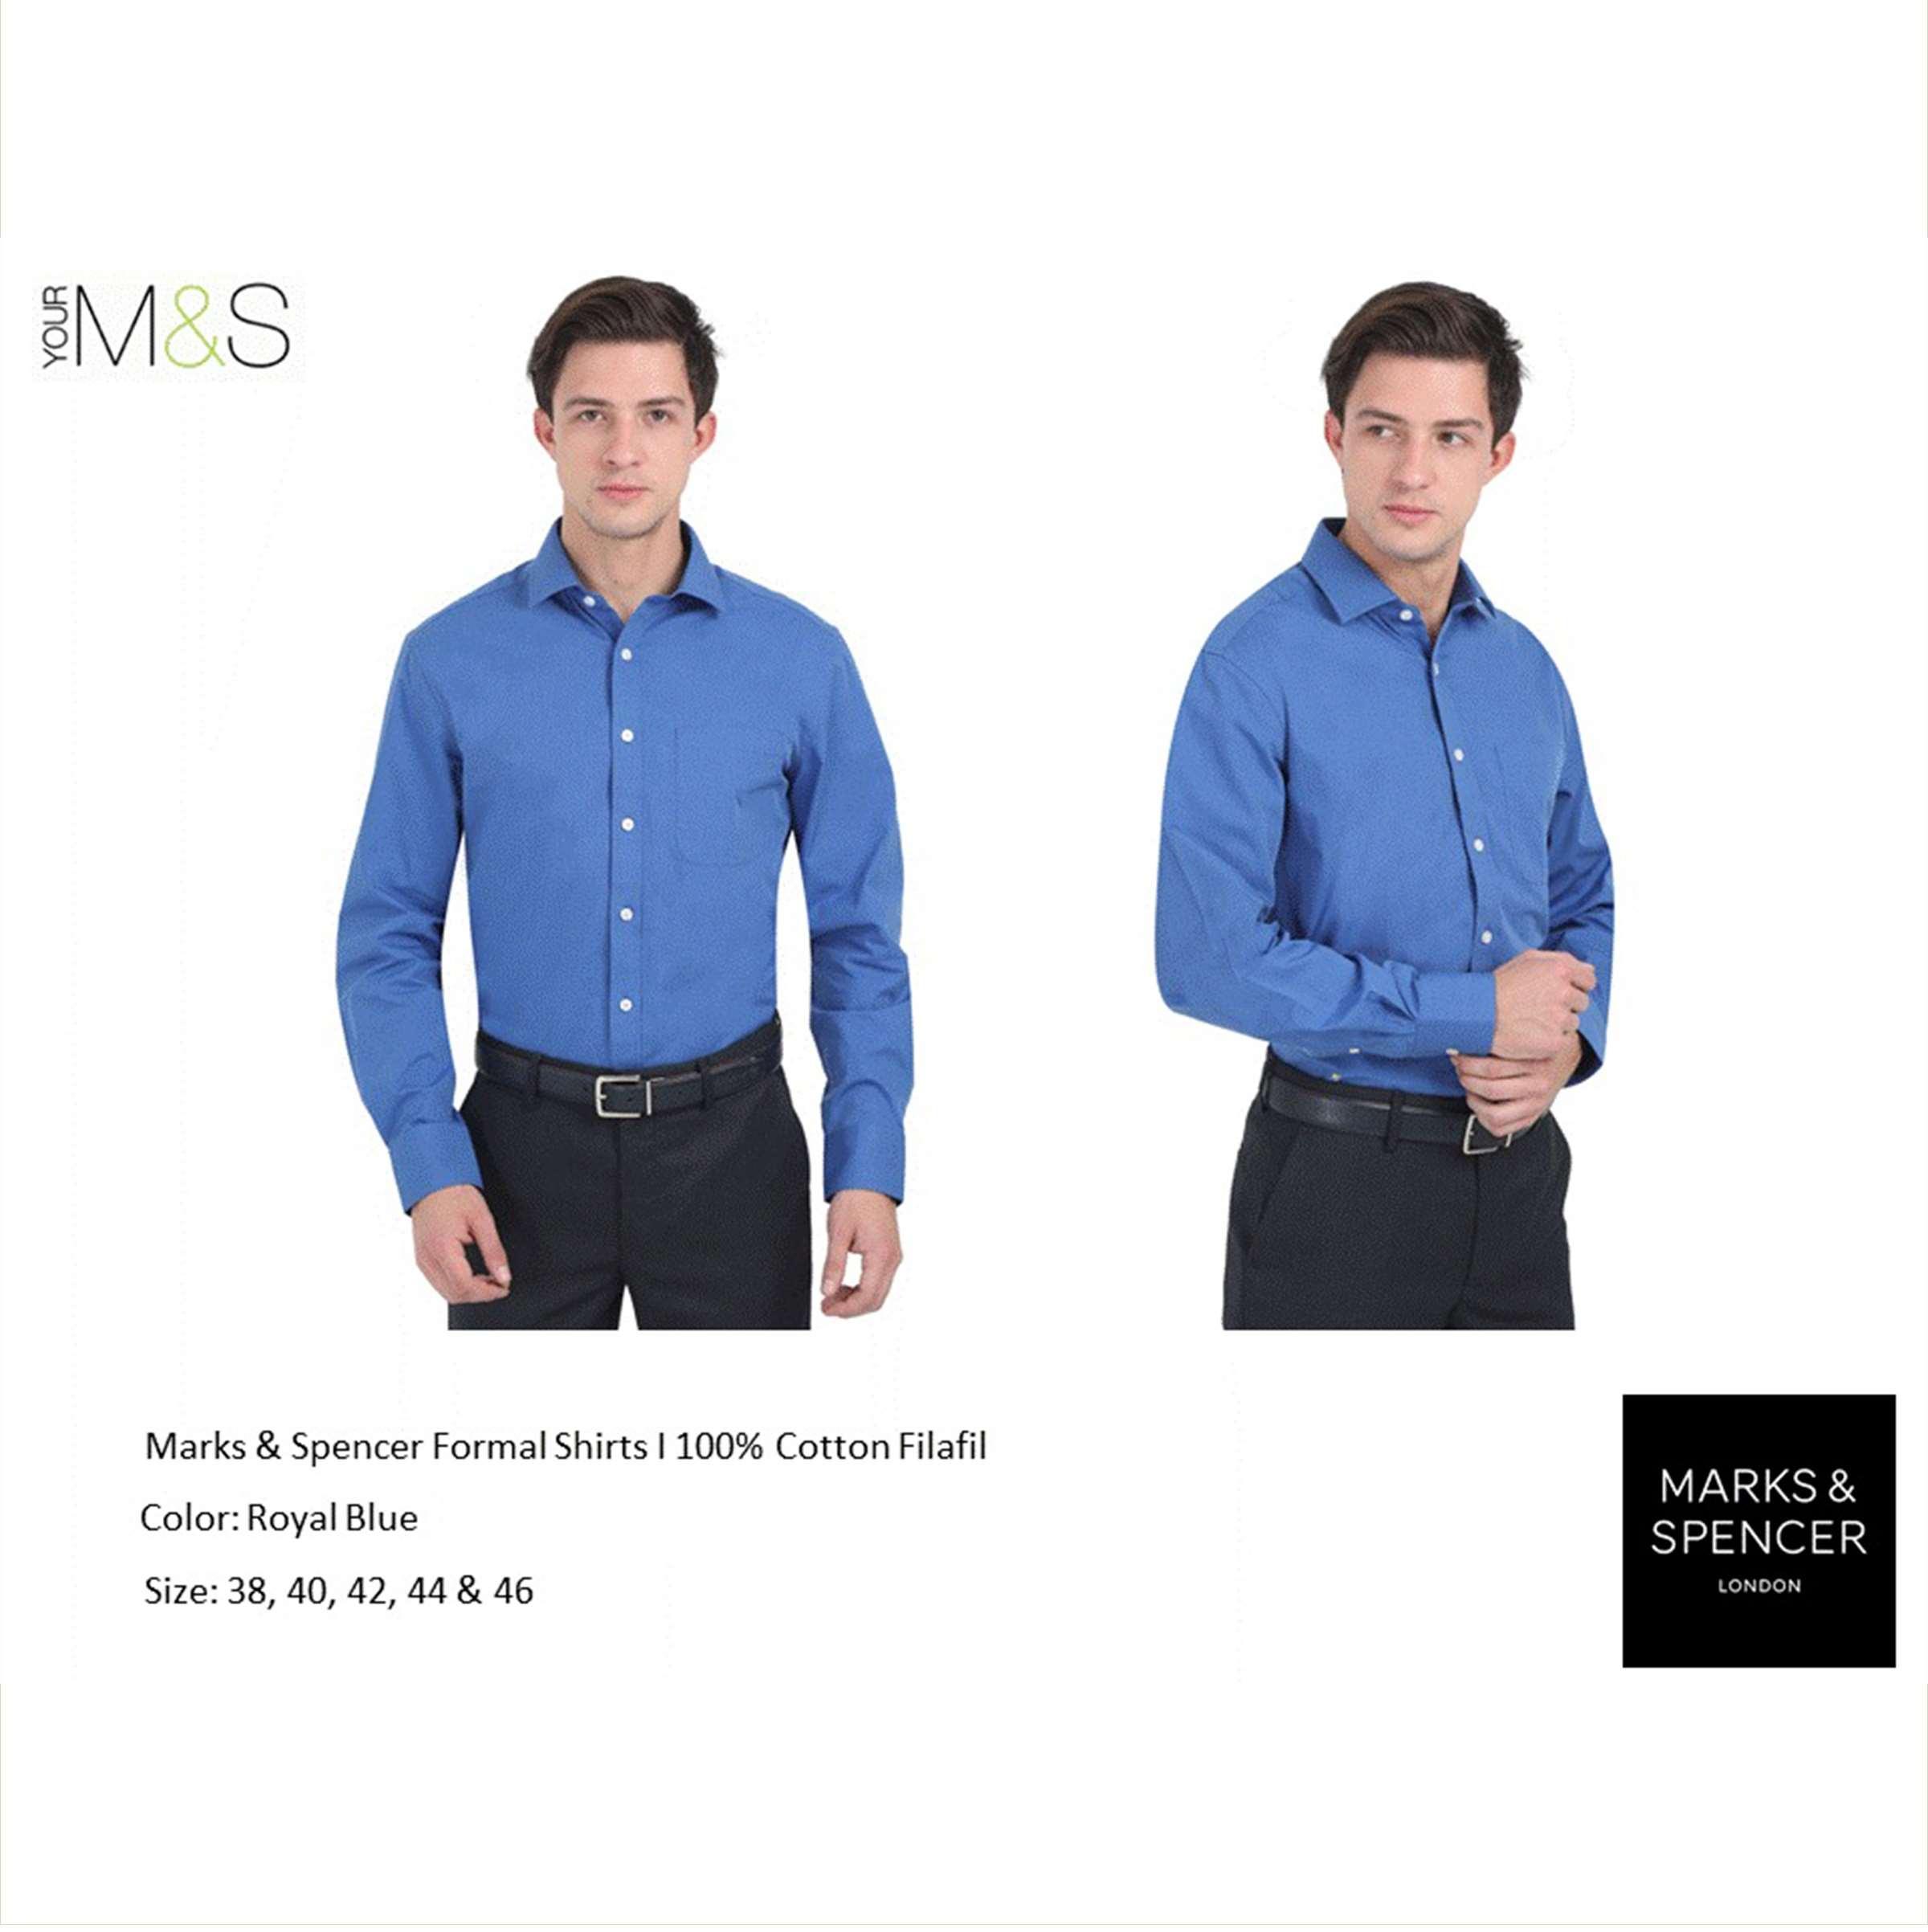 Marks & Spencer Men's Formal Shirts